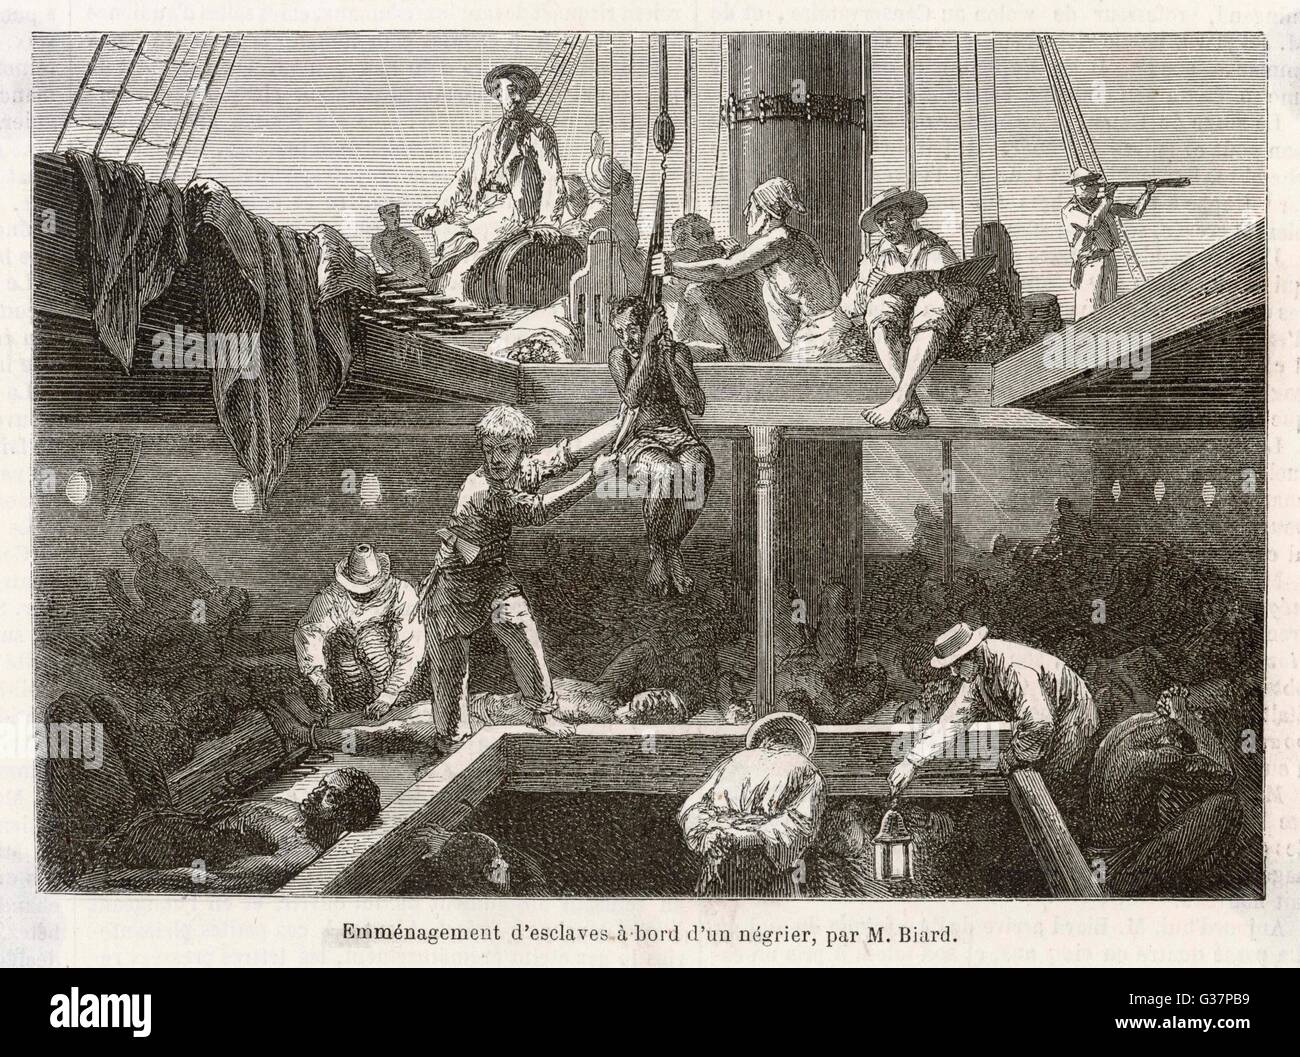 Что заставляли делать рабов. Трансатлантическая работорговля картина. Работорговля Англия 18 век. Рабы на корабле.